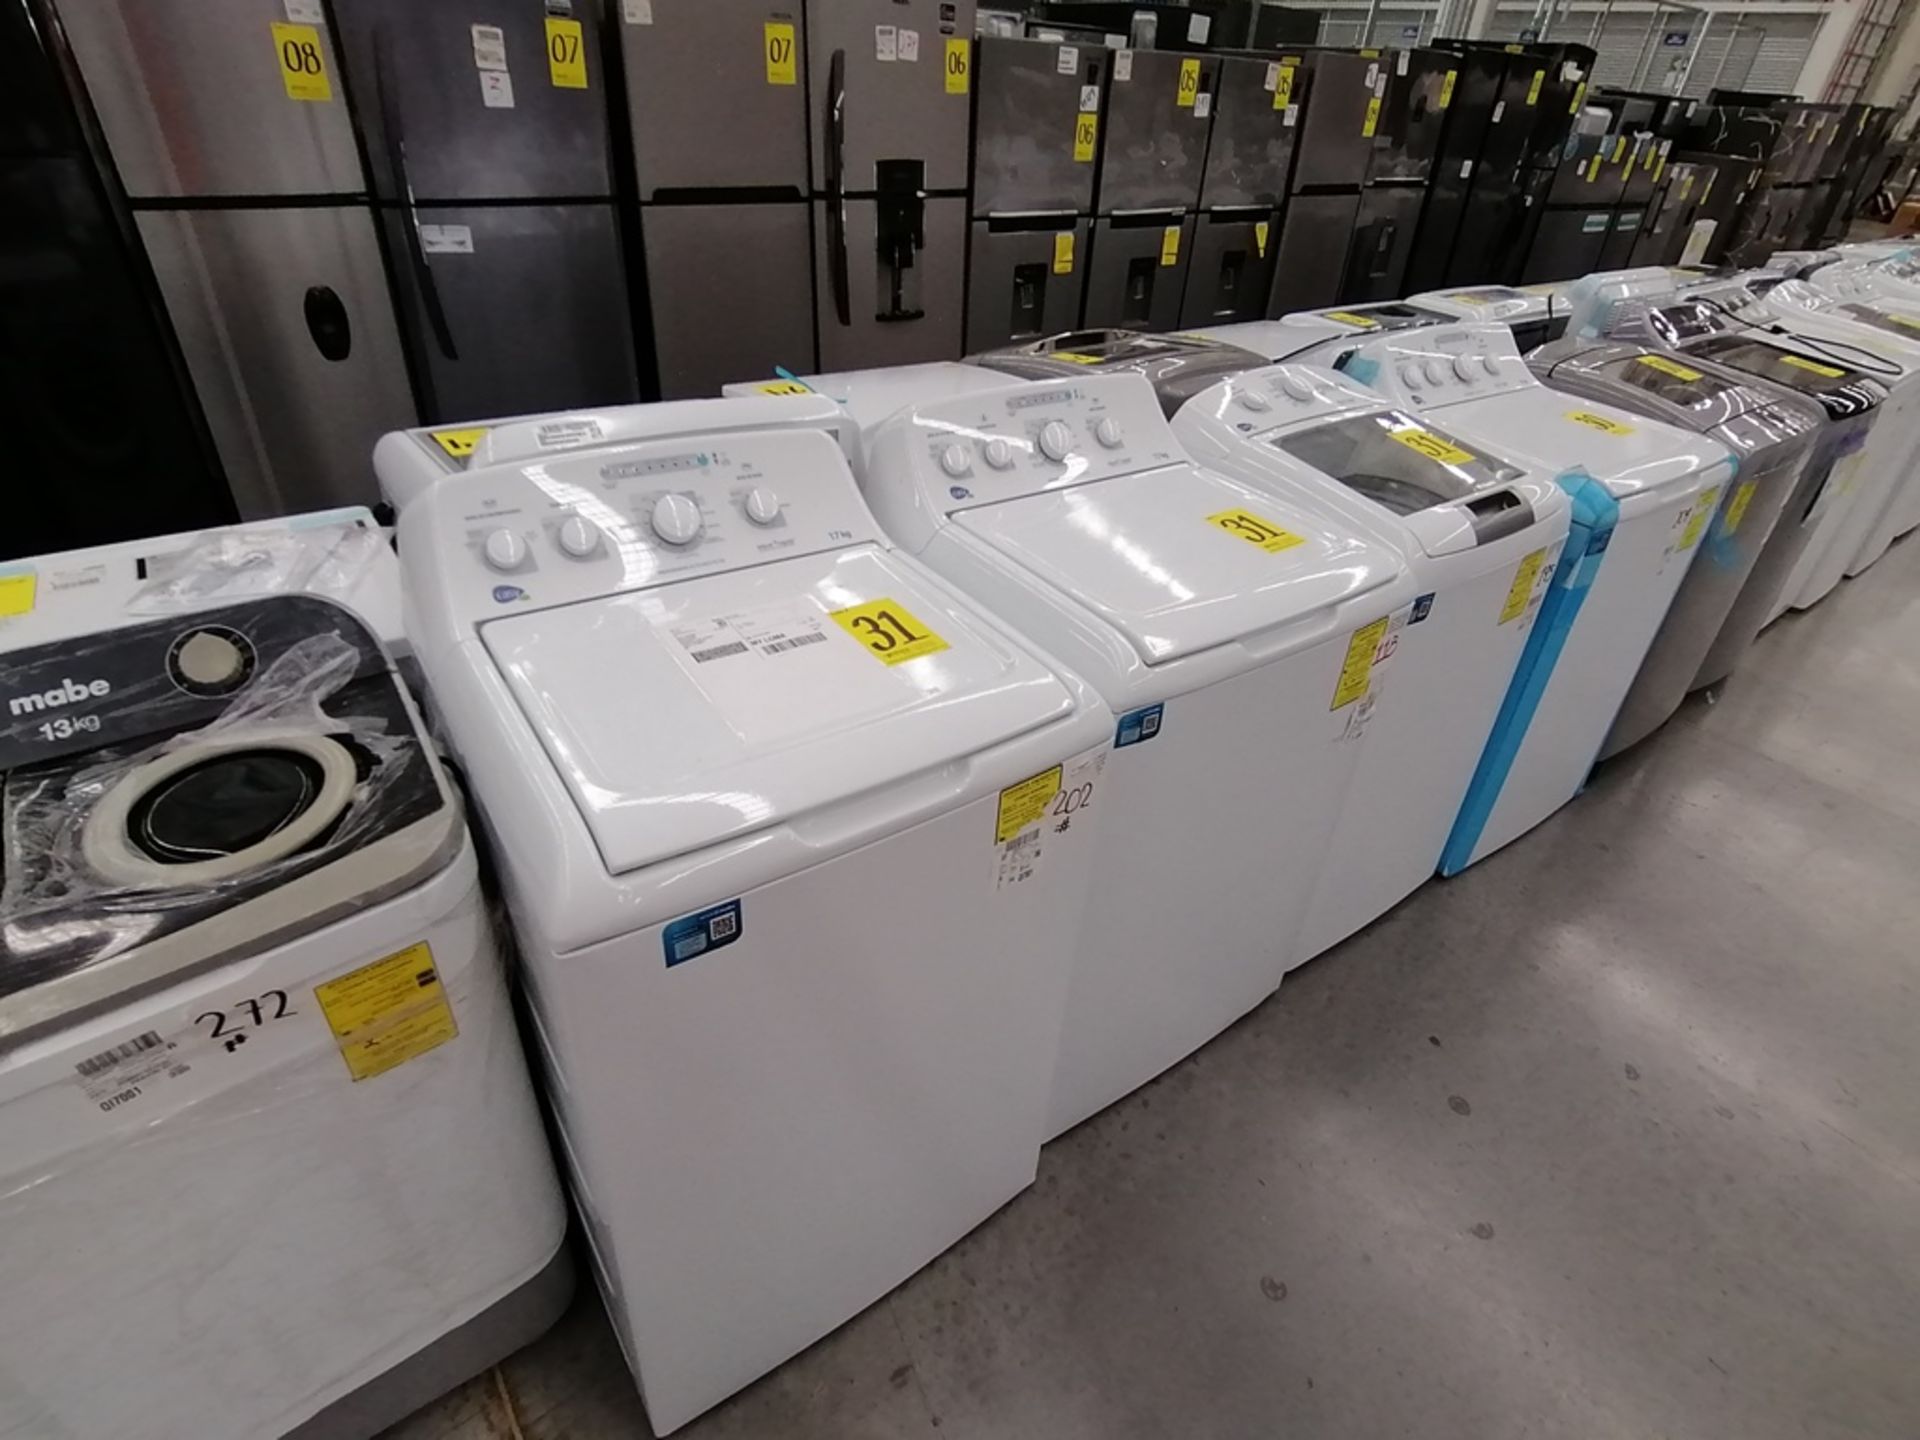 Lote de 3 lavadoras contiene: 1 Lavadora de 17KG, Marca Easy, Modelo LEA77114CBAB03, Serie 2105S522